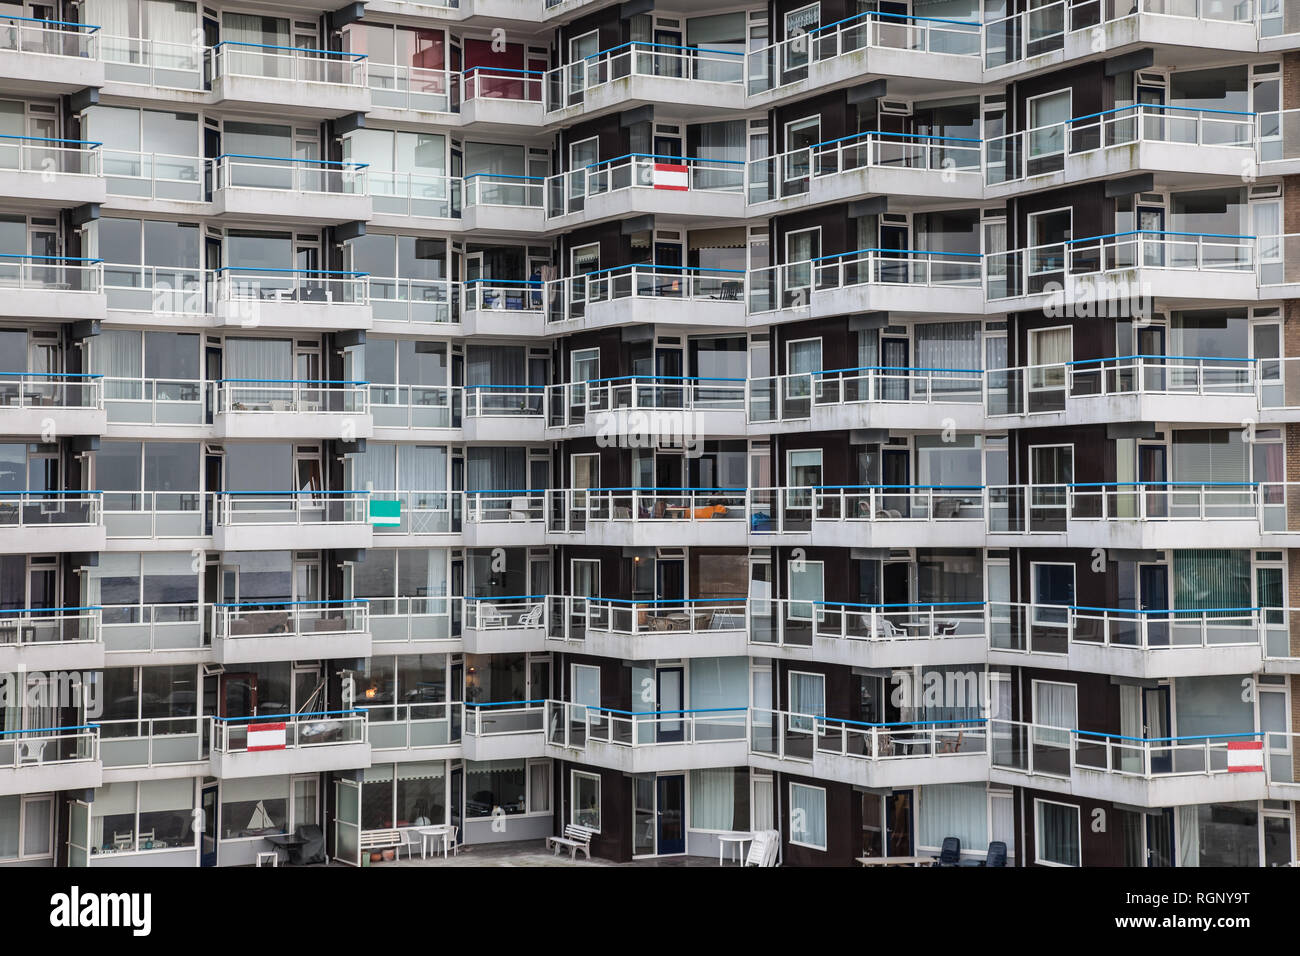 Hochhaus mit Balkonies mit blauem Geländer zeigt das Leben in einem völlig einheitlichen Weise Stockfoto